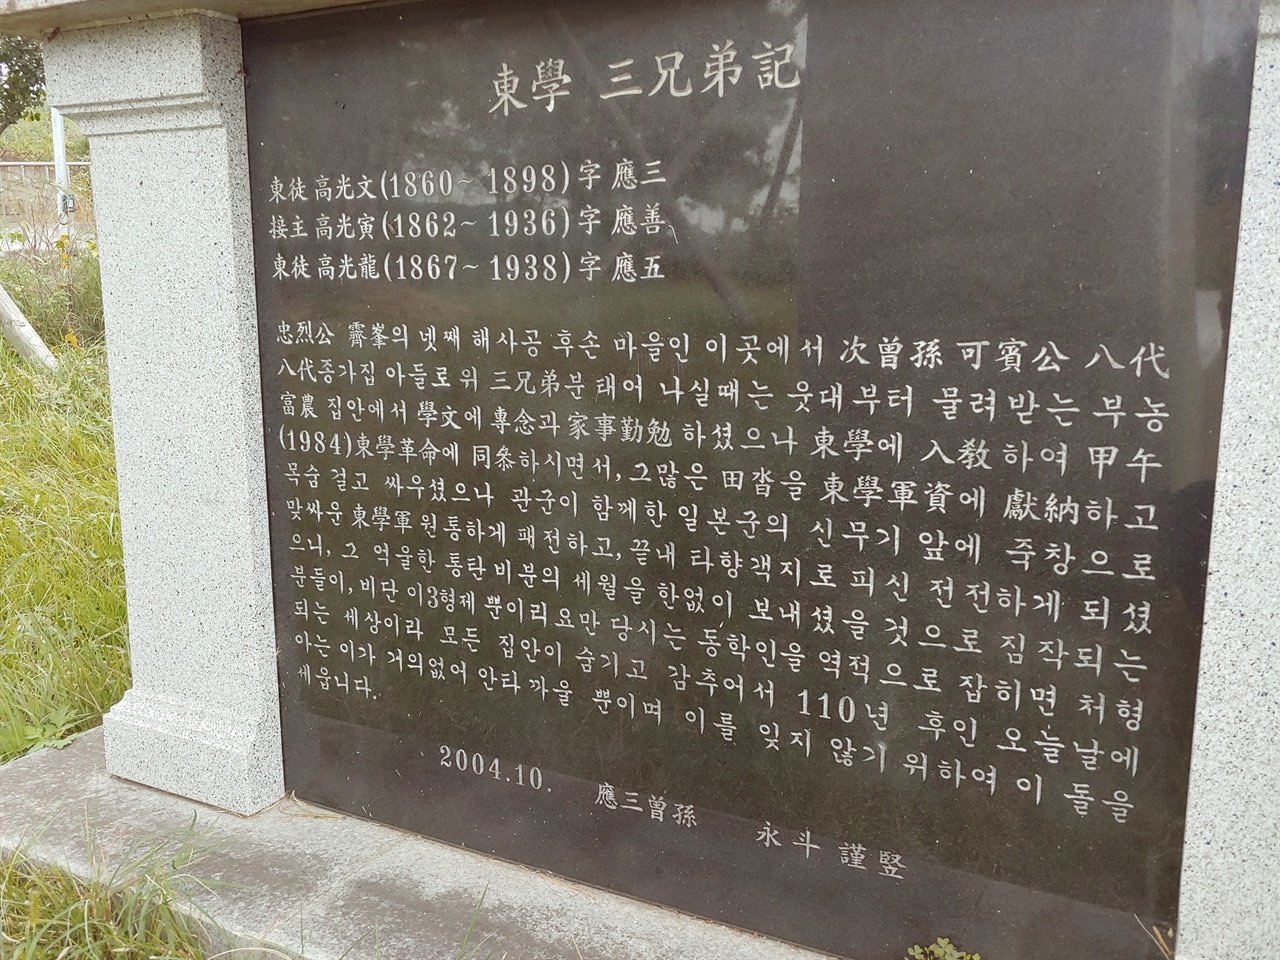 (광주 동학농민혁명 기념공원 안의 ‘동학농민혁명기념비’ 아래 부분에 새겨져 있음.)